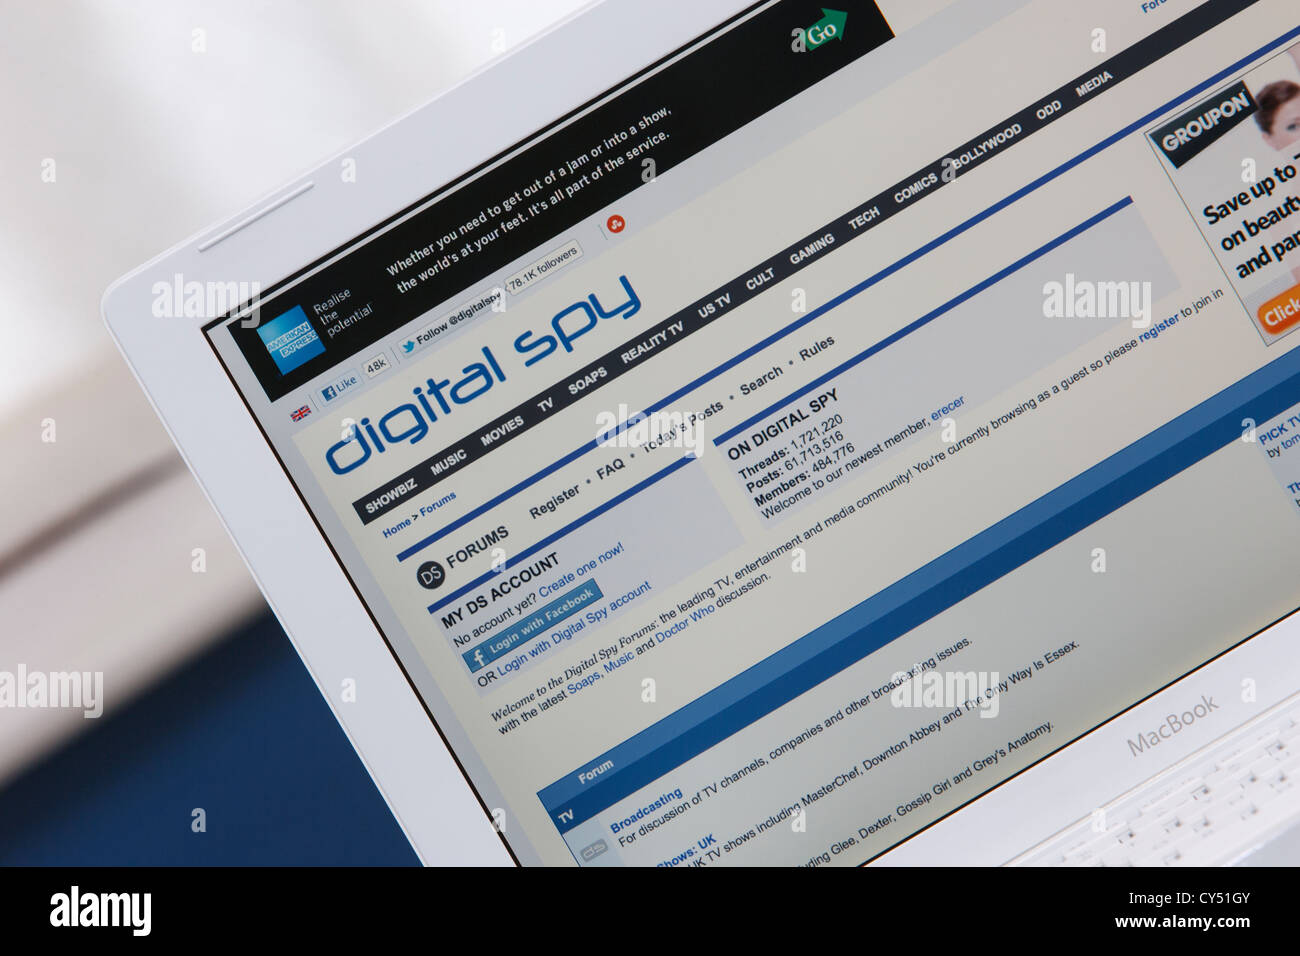 Une page web à partir du showbiz, divertissement et médias Nouvelles site Digital Spy est illustré le fait d'être vu sur un écran d'ordinateur portable Banque D'Images